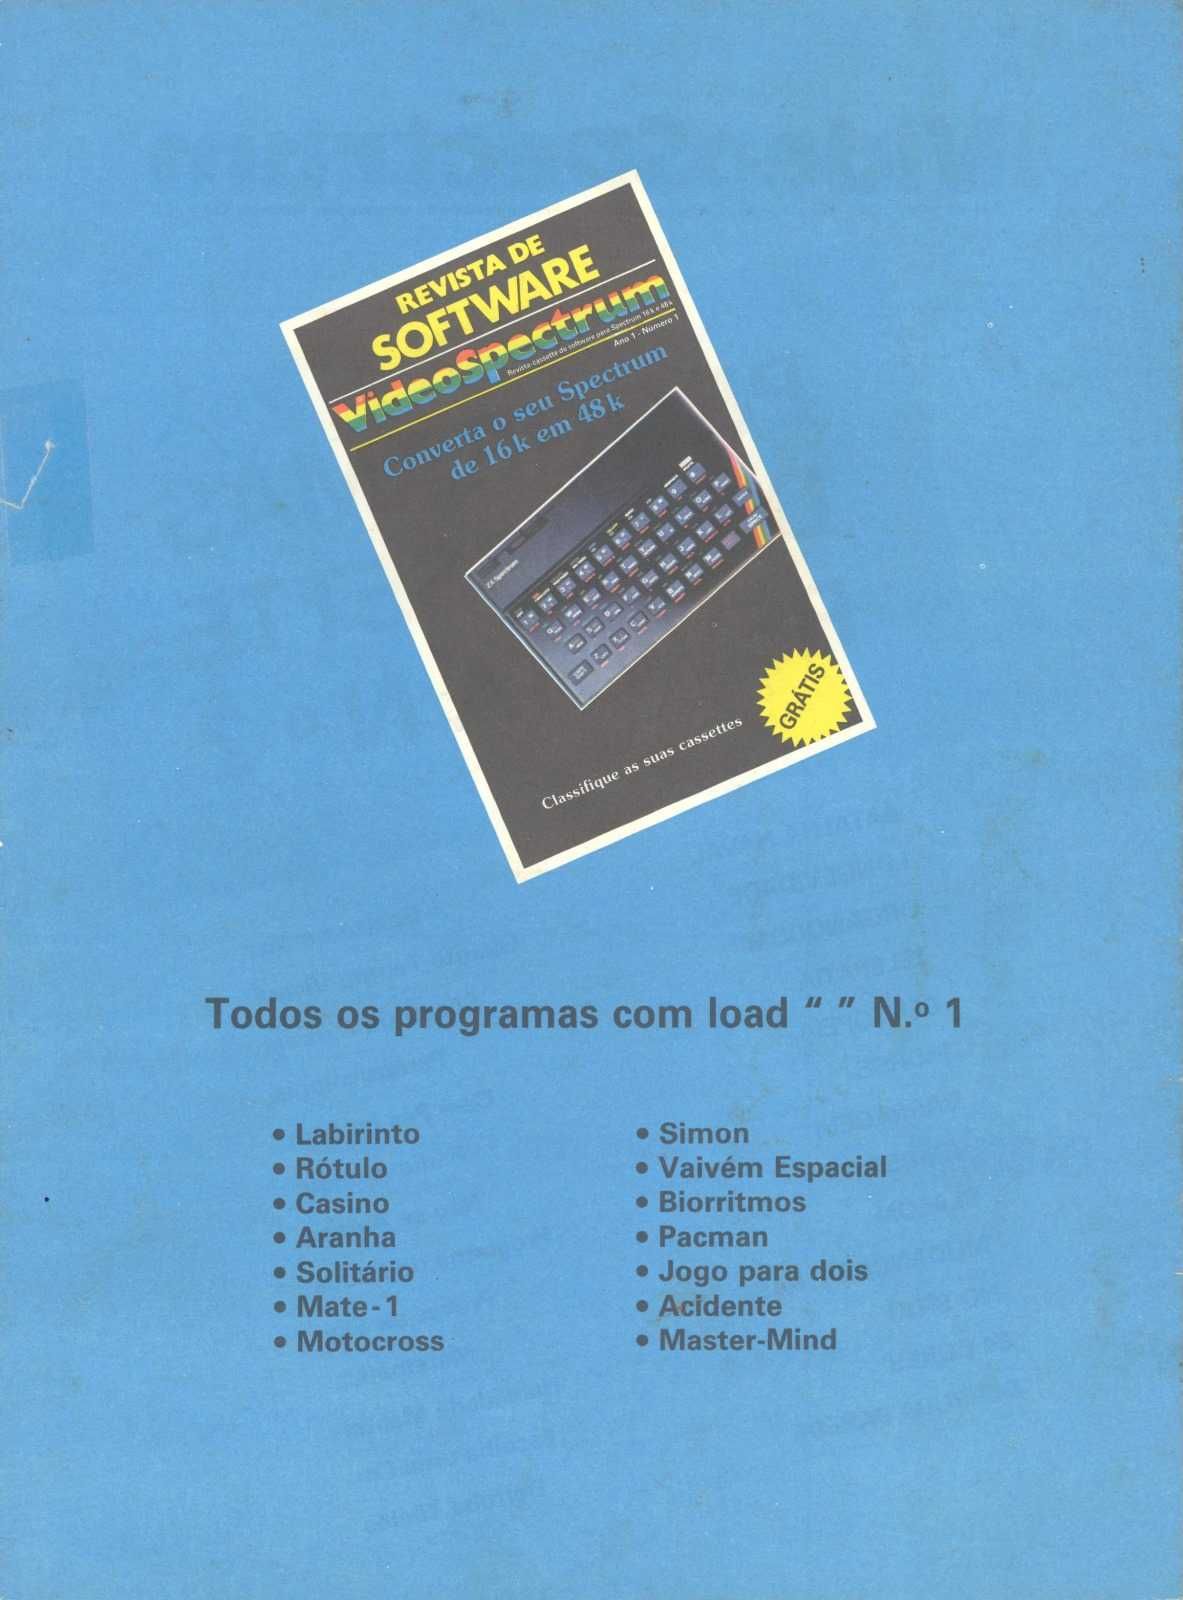 VideoSpectrum - raro - nº1, 2 e 3 -revista vintage informática anos 80